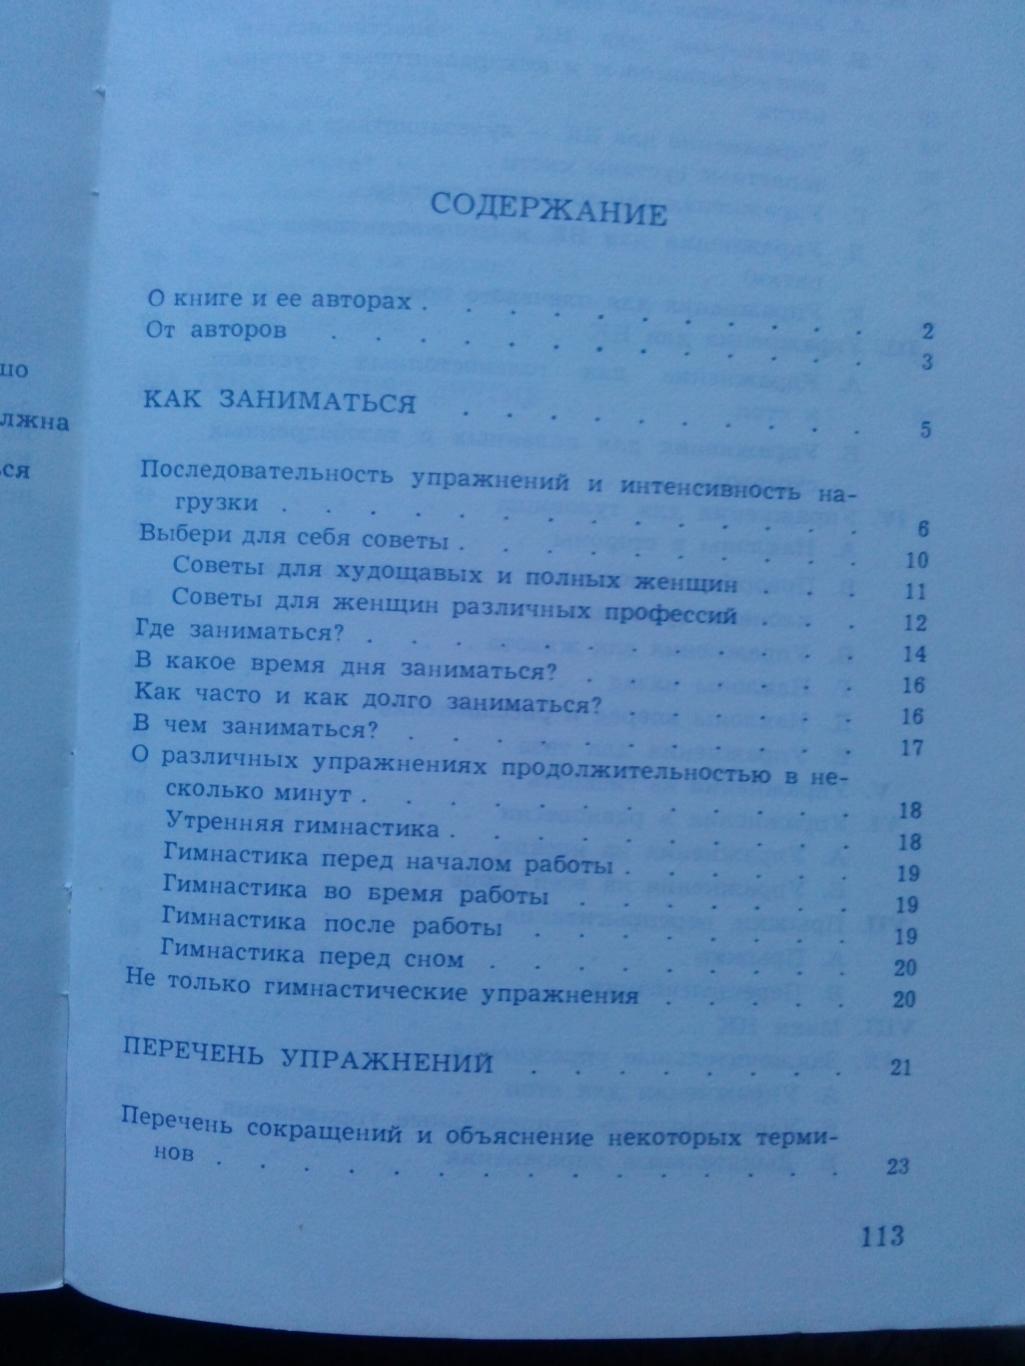 А. Пионтковска , Е. Плошай -Здоровье и красота1979 г. (Спорт , физкультура 2